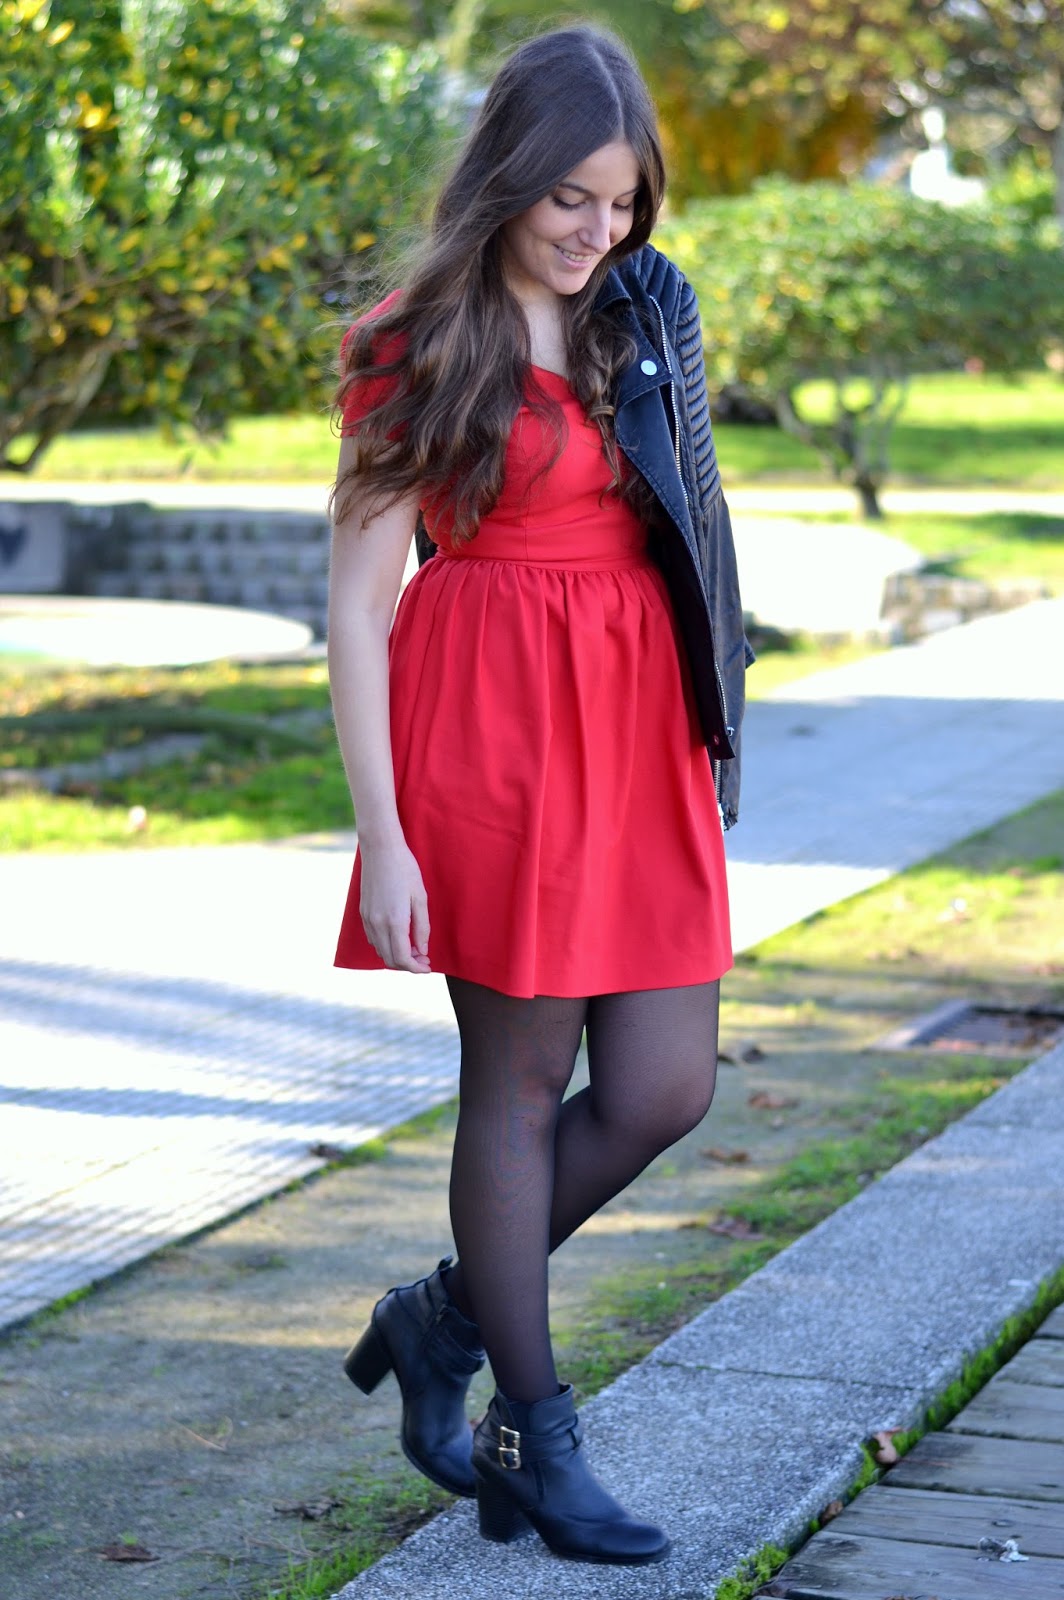 http://me-andmybag.blogspot.com.es/2014/12/red-dress.html